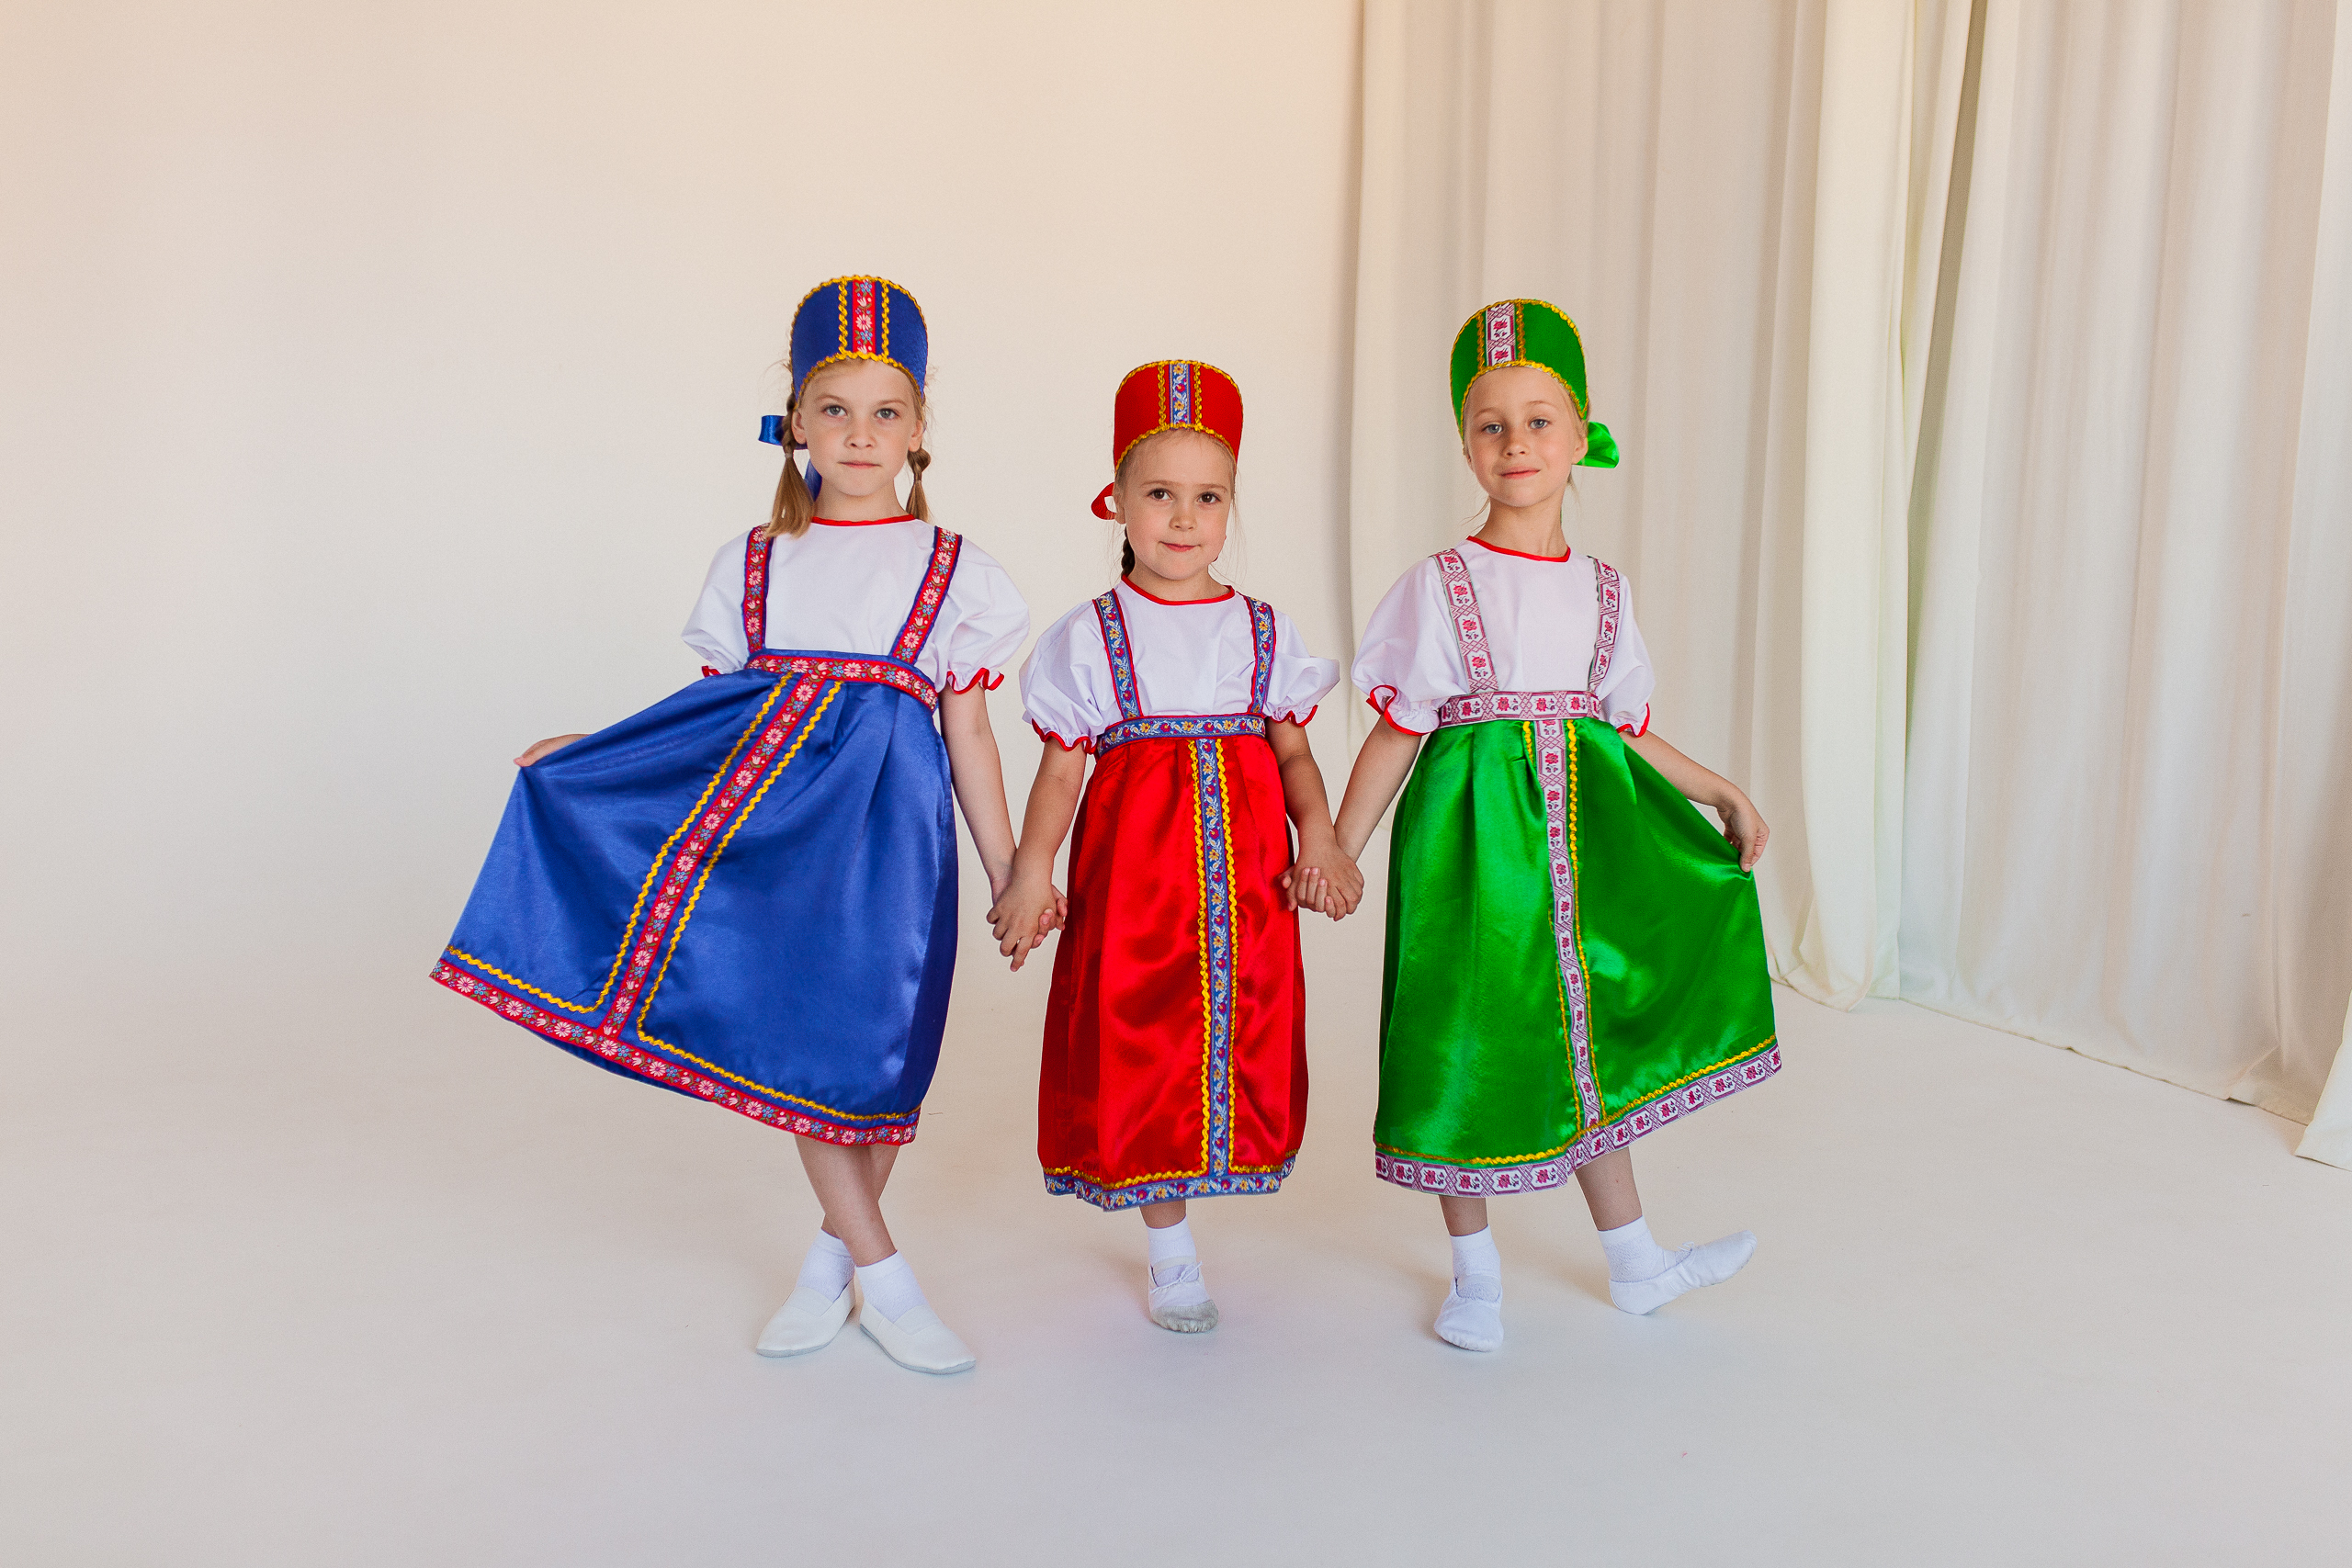 Русский народный костюм (девочка)